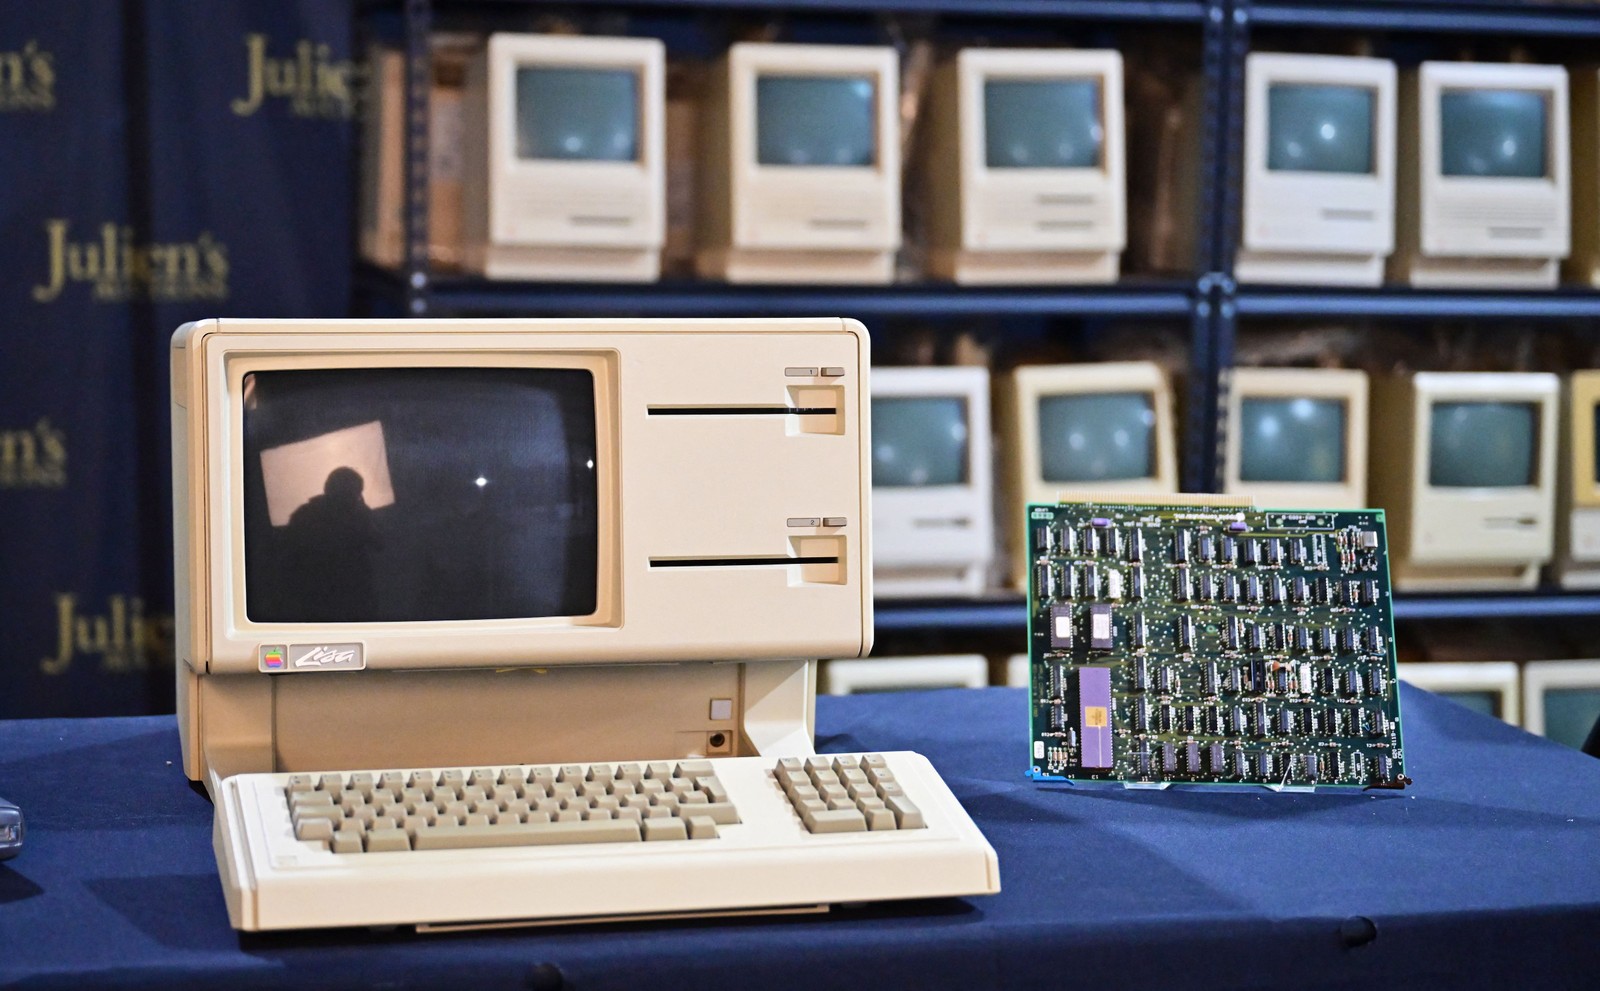 Imagem mostra um computador Apple modelo Lisa, lançado nos anos 80 — Foto: Frederic J. BROWN / AFP